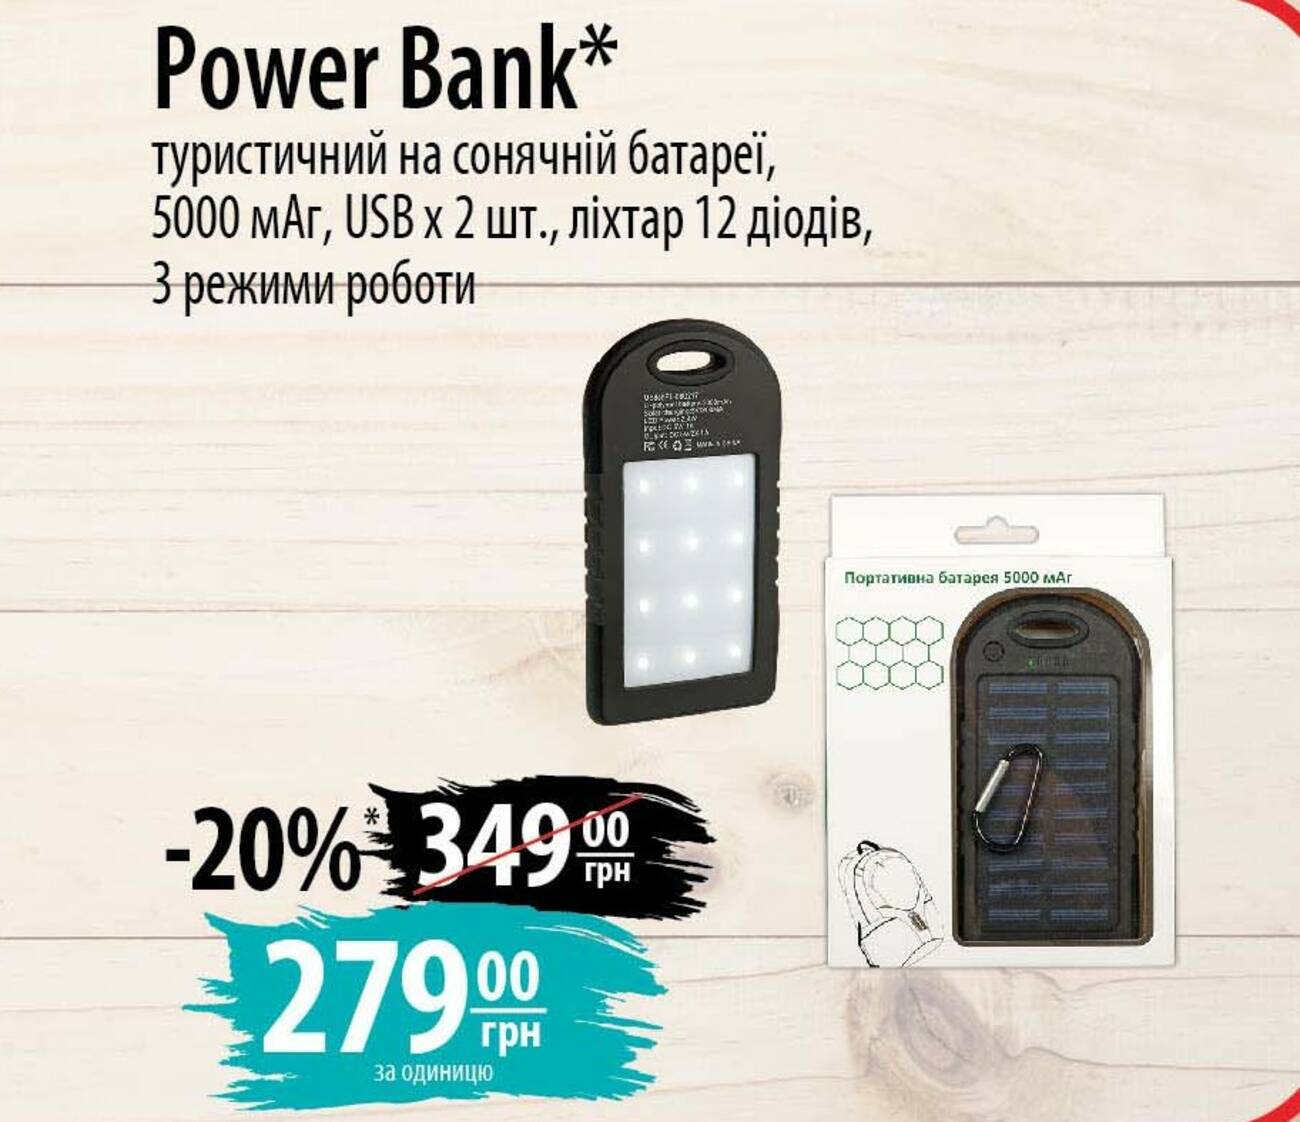 Мобильная батарея, Power Bank